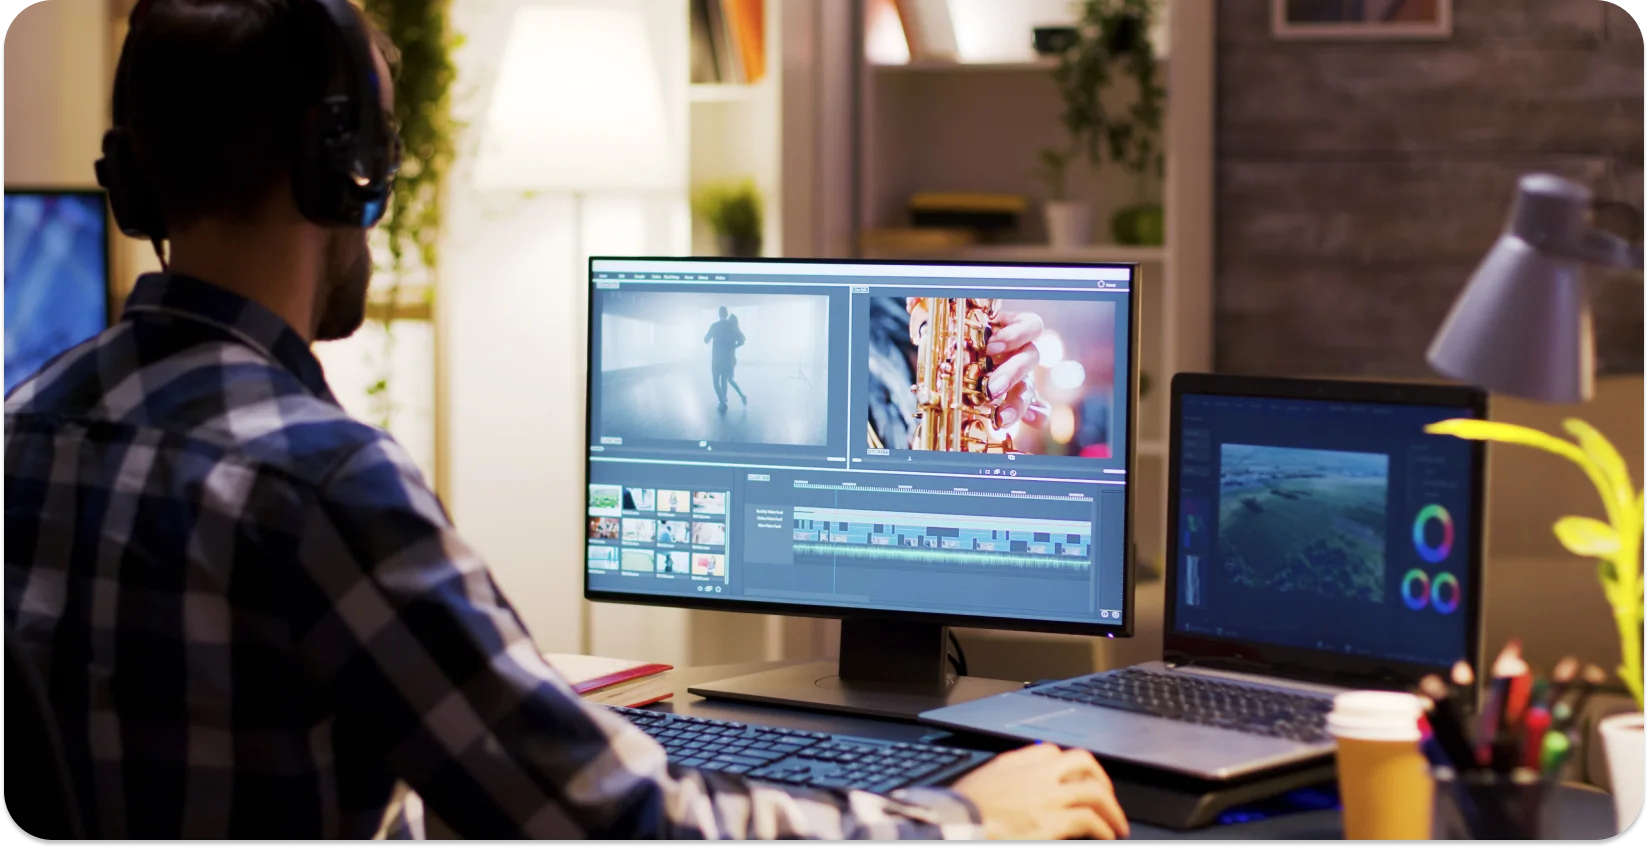 Redaktorius, dirbantis pridedant antraštes prie vaizdo įrašo naudojant dviejų monitorių sąranką su profesionalia redagavimo programine įranga.